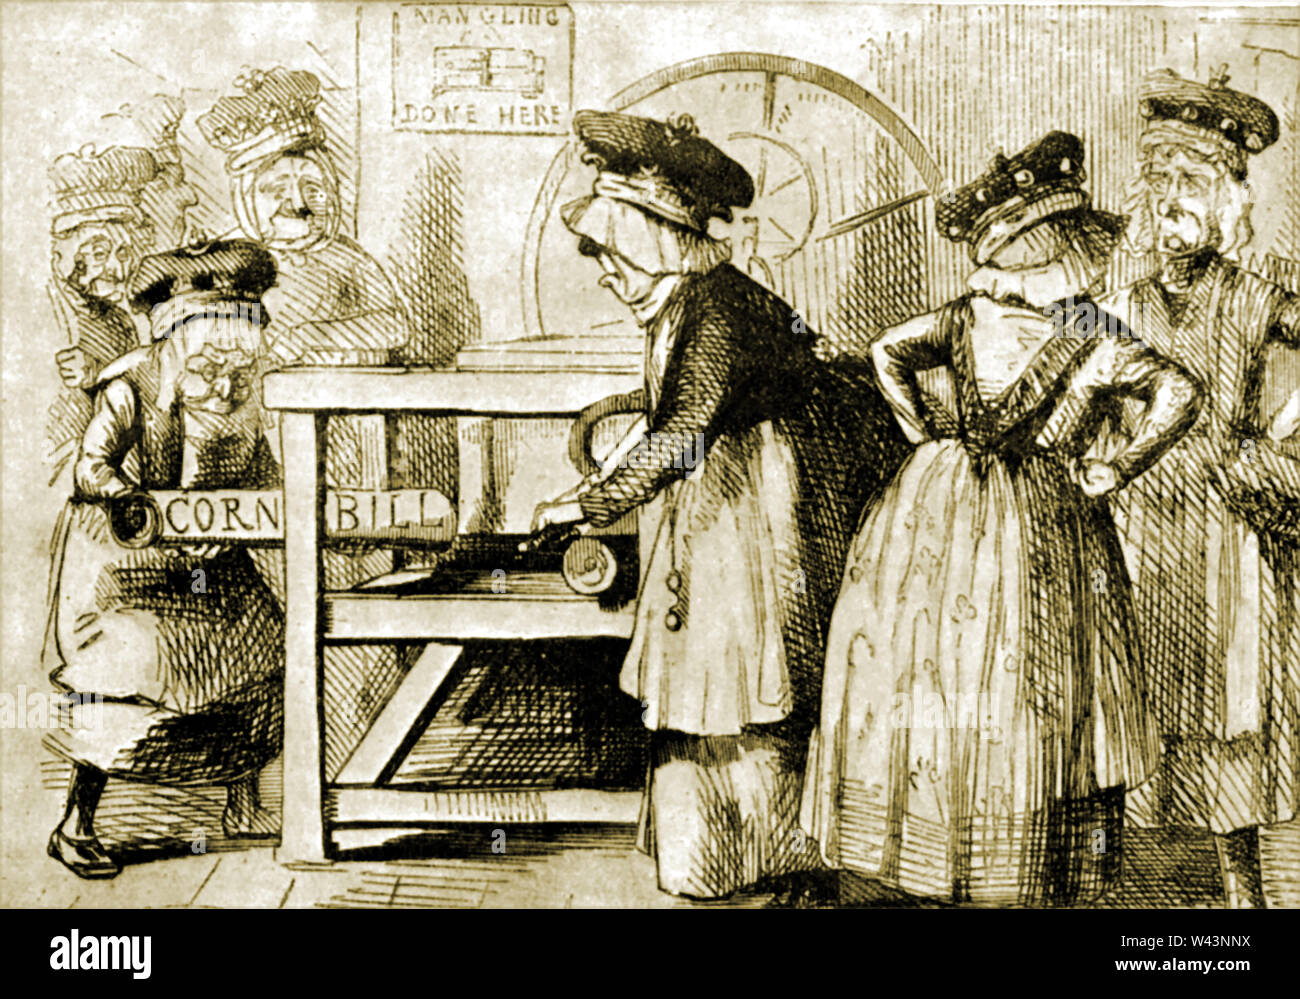 Politische Karikatur aus der 1840er mokiert sich über die Aristokratie, die von mangeln, die Aufhebung der KORNGESETZE, Zölle und andere Handelsbeschränkungen für importierte Lebensmittel und Getreide, wodurch hohe Lebensmittelpreise beschuldigt wurden. Stockfoto